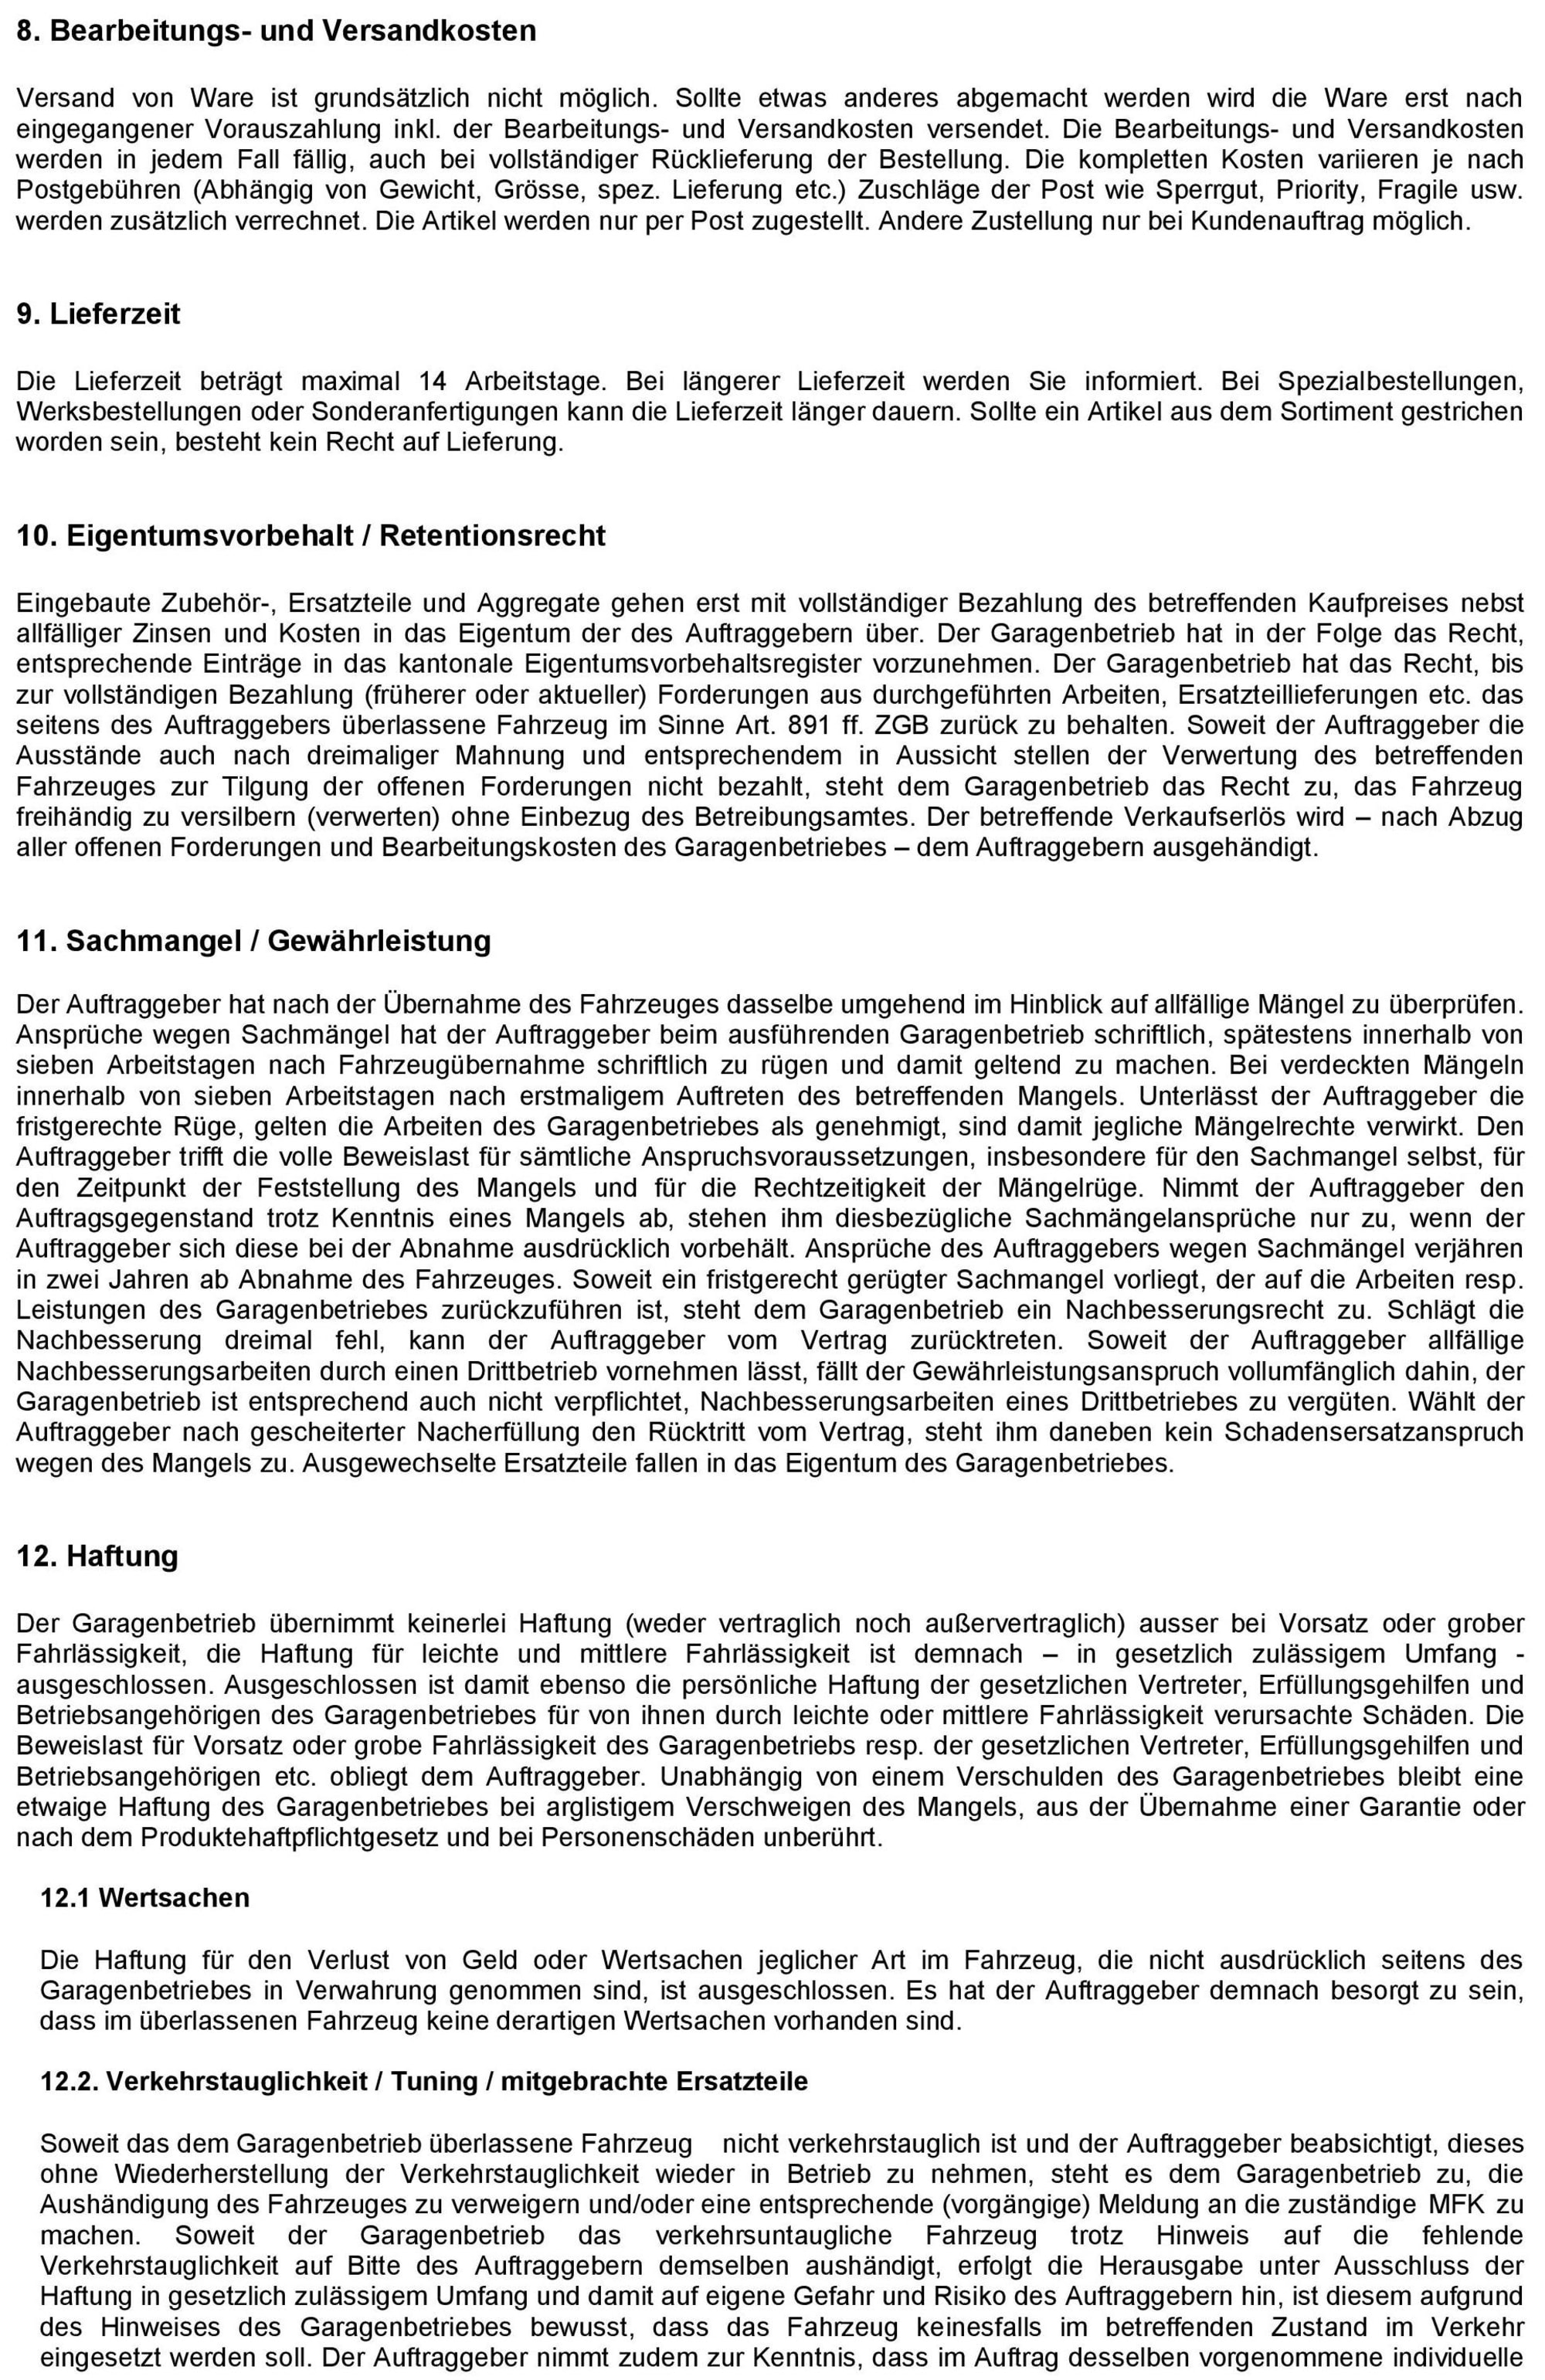 Allgemeine Geschäftbedingungen NEFF AG vom 17.08.2018-page-003